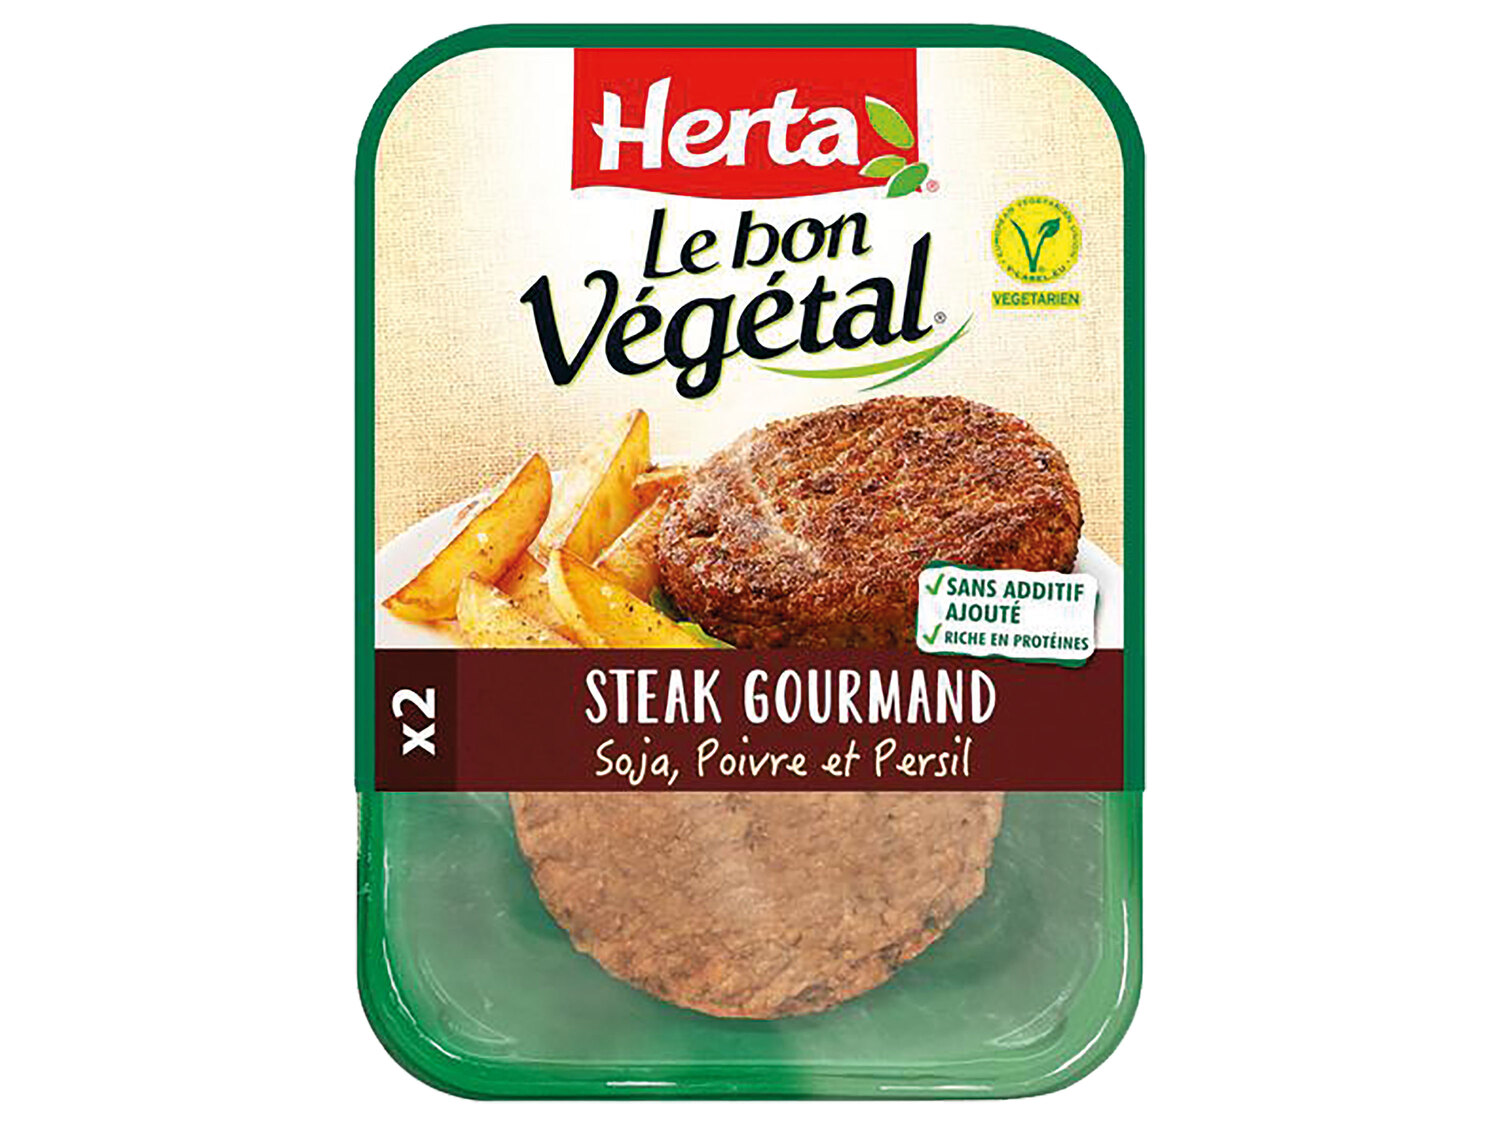 Herta Le Bon Végétal , le prix 1.66 € 
- Le paquet de 160 g : 2,49 € (1 kg ...